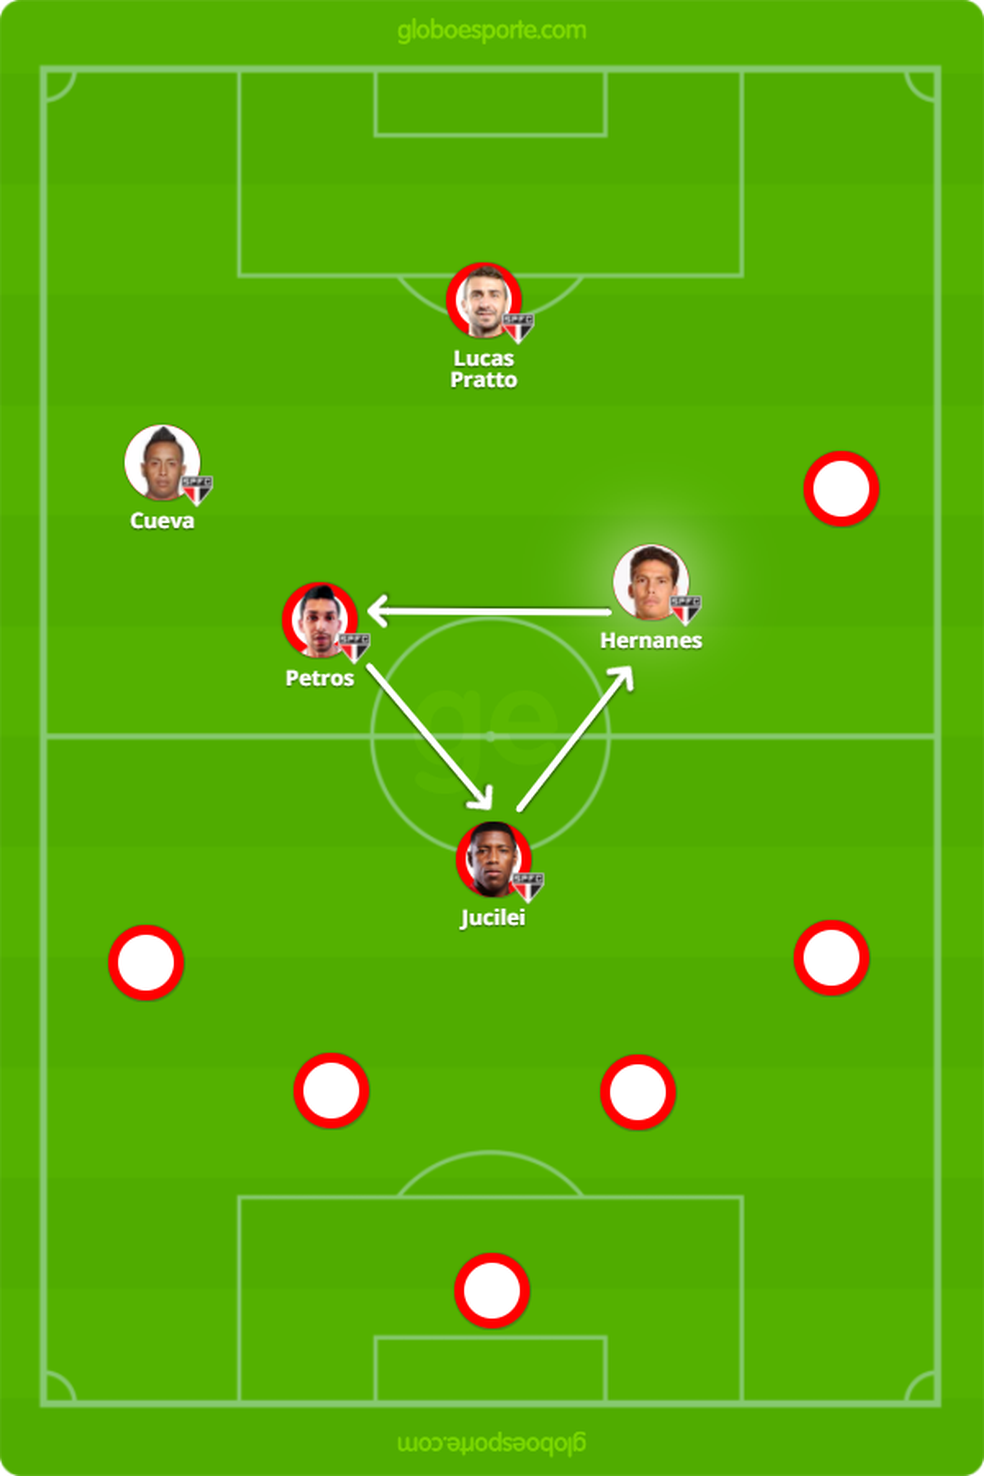 Opção para Dorival, com Petros alinhado a Hernanes e um triângulo no meio-campo (Foto: GloboEsporte.com)